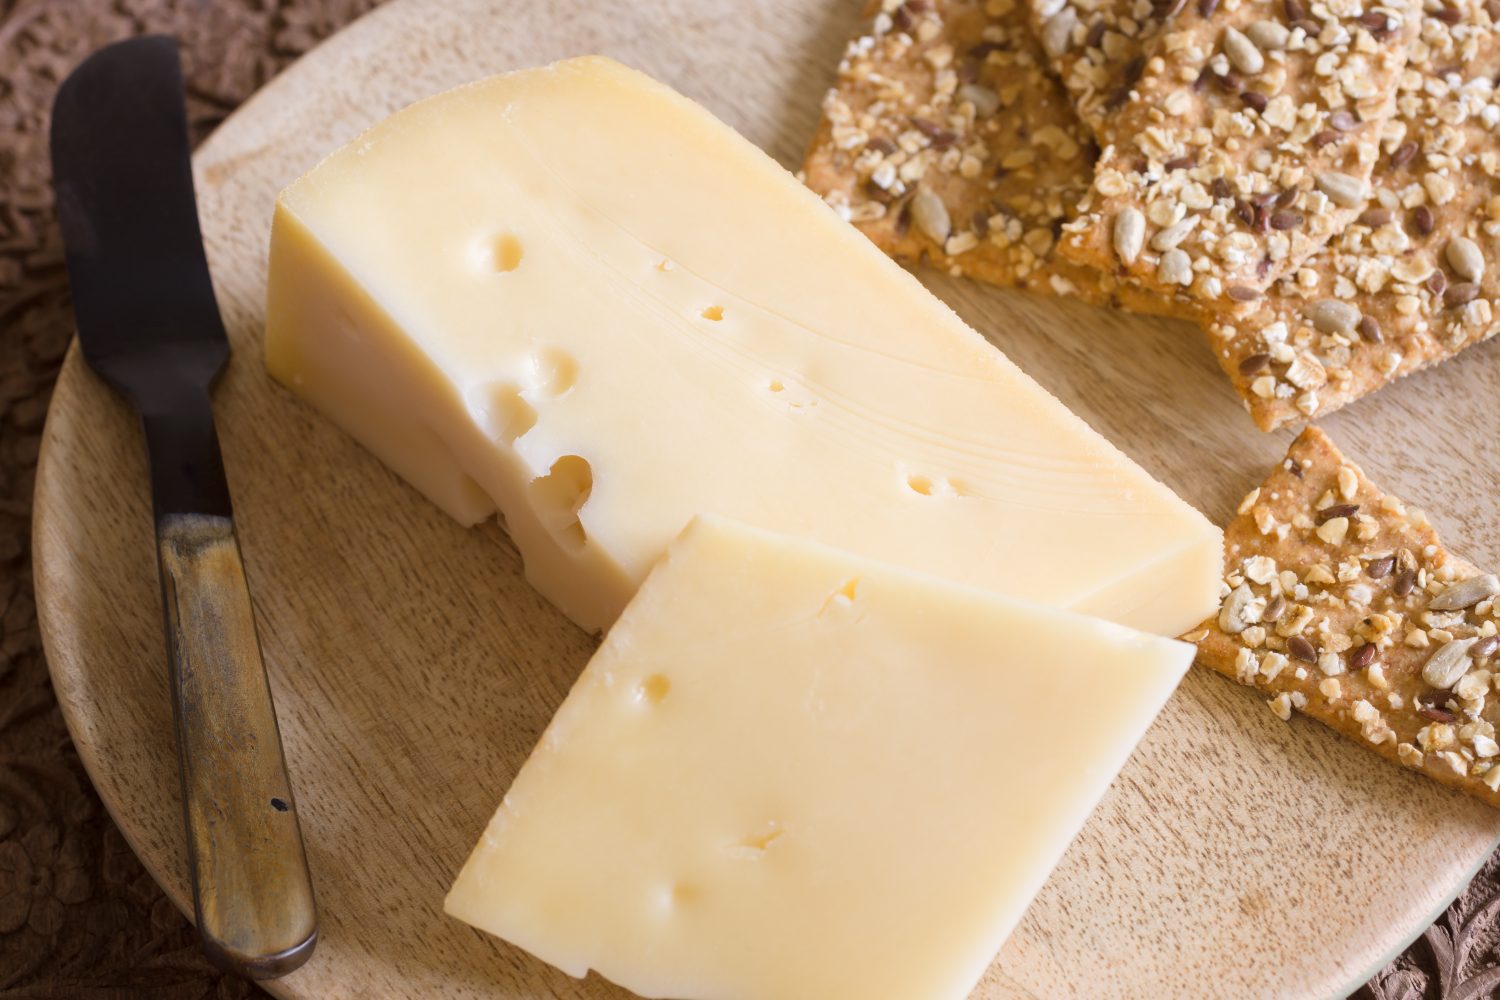 Jarlsberg un formaggio norvegese delicato e cremoso simile all'Emmental svizzero con i suoi caratteristici buchi